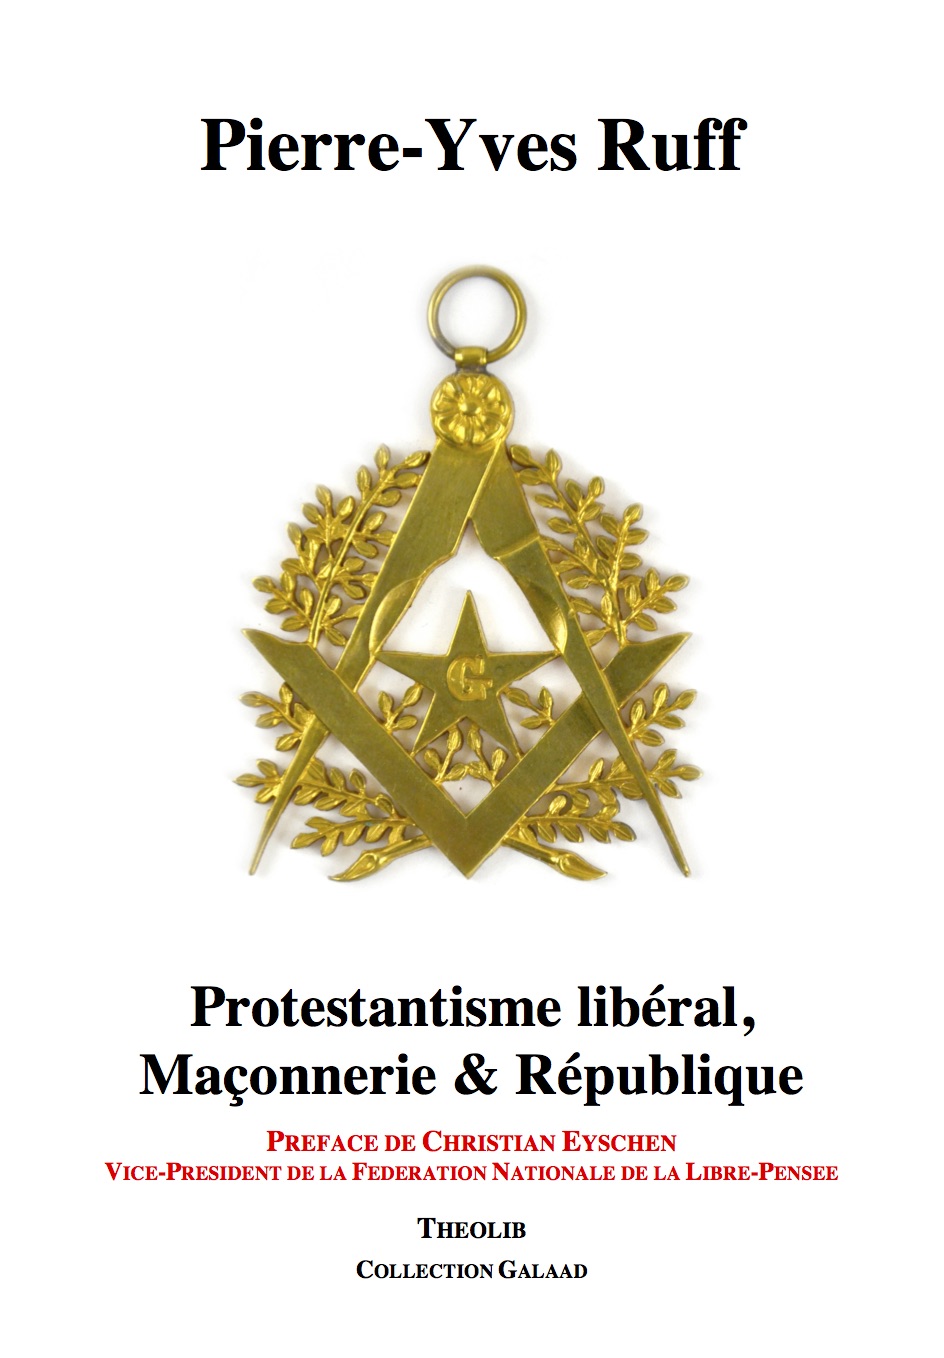 Pierre-Yves Ruff, Protestantisme libéral, Maçonnerie et République